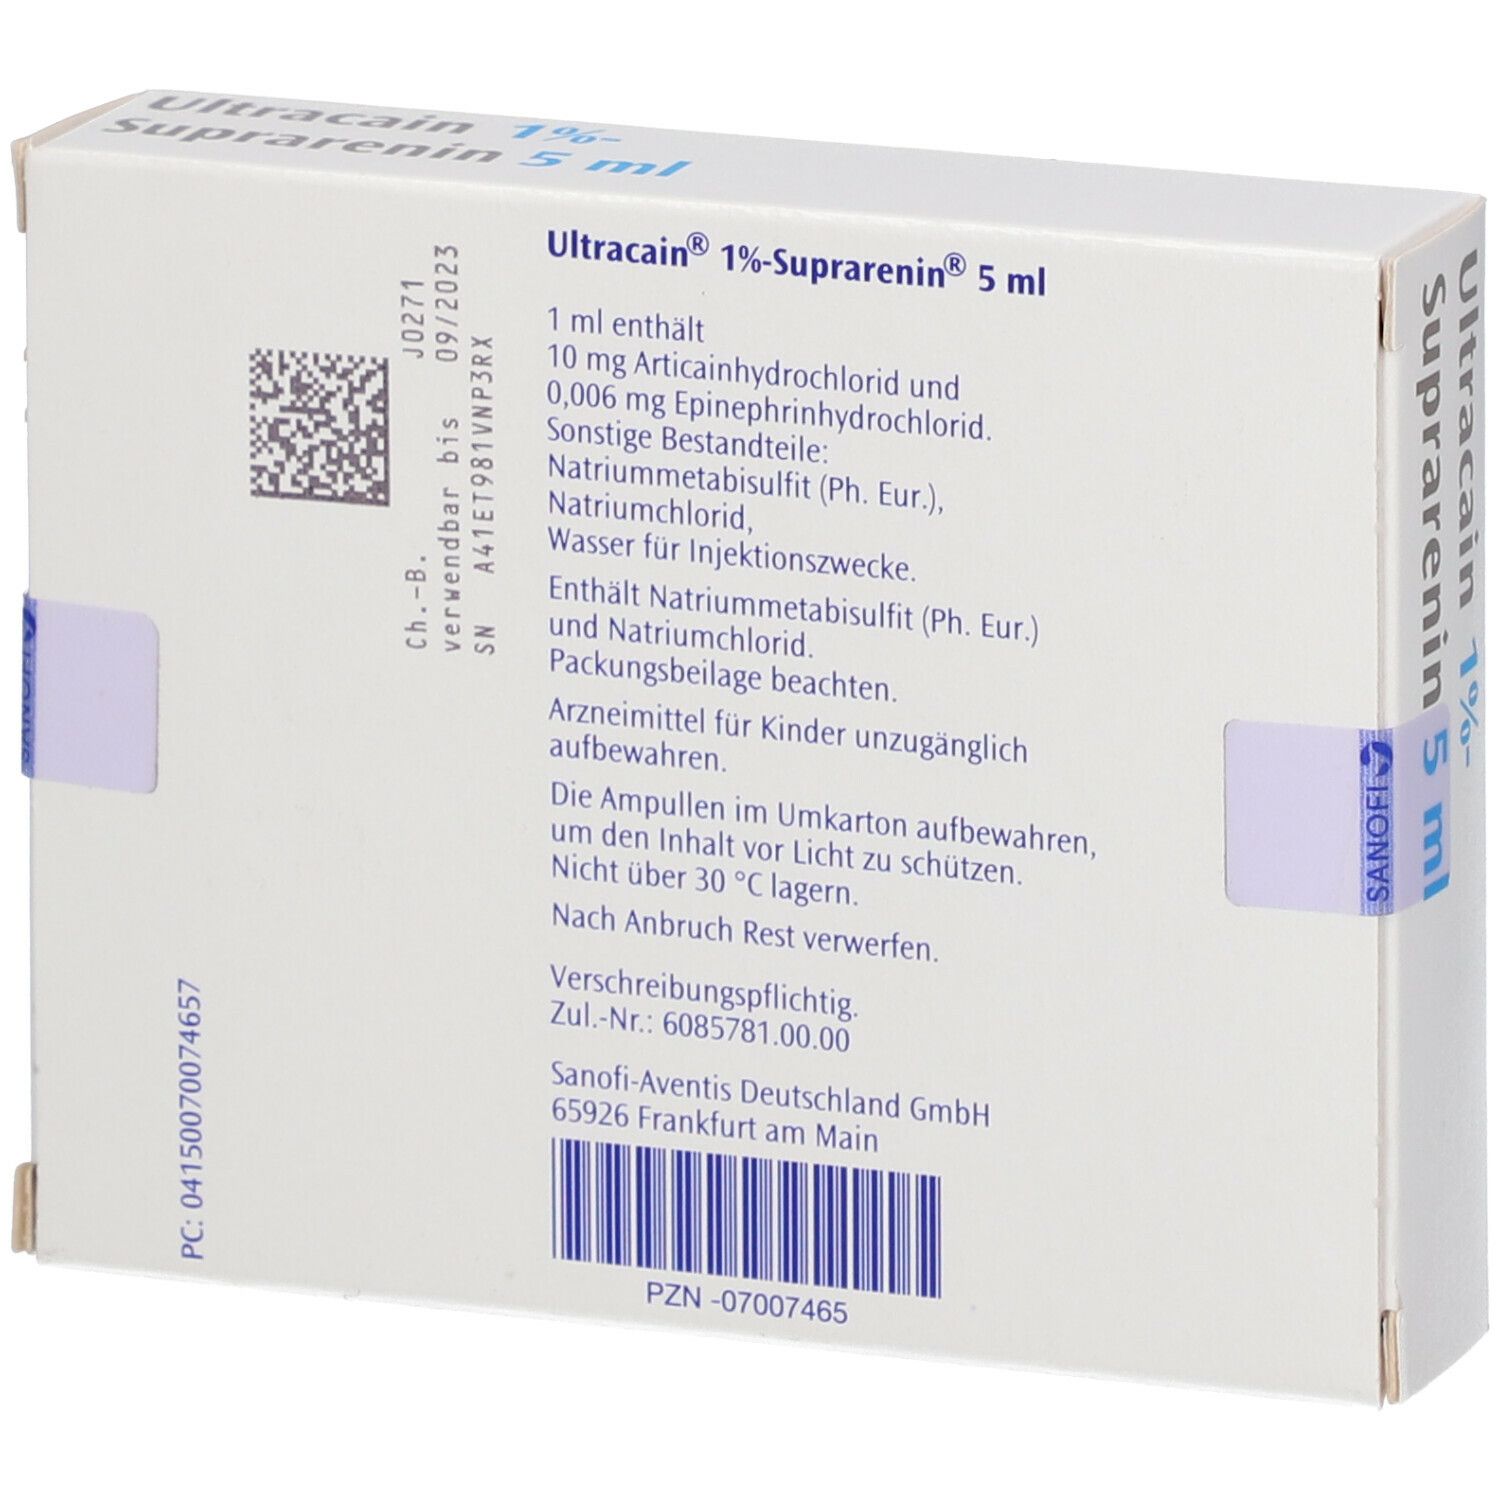 Ultracain® 1% -Suprarenin® 5 ml